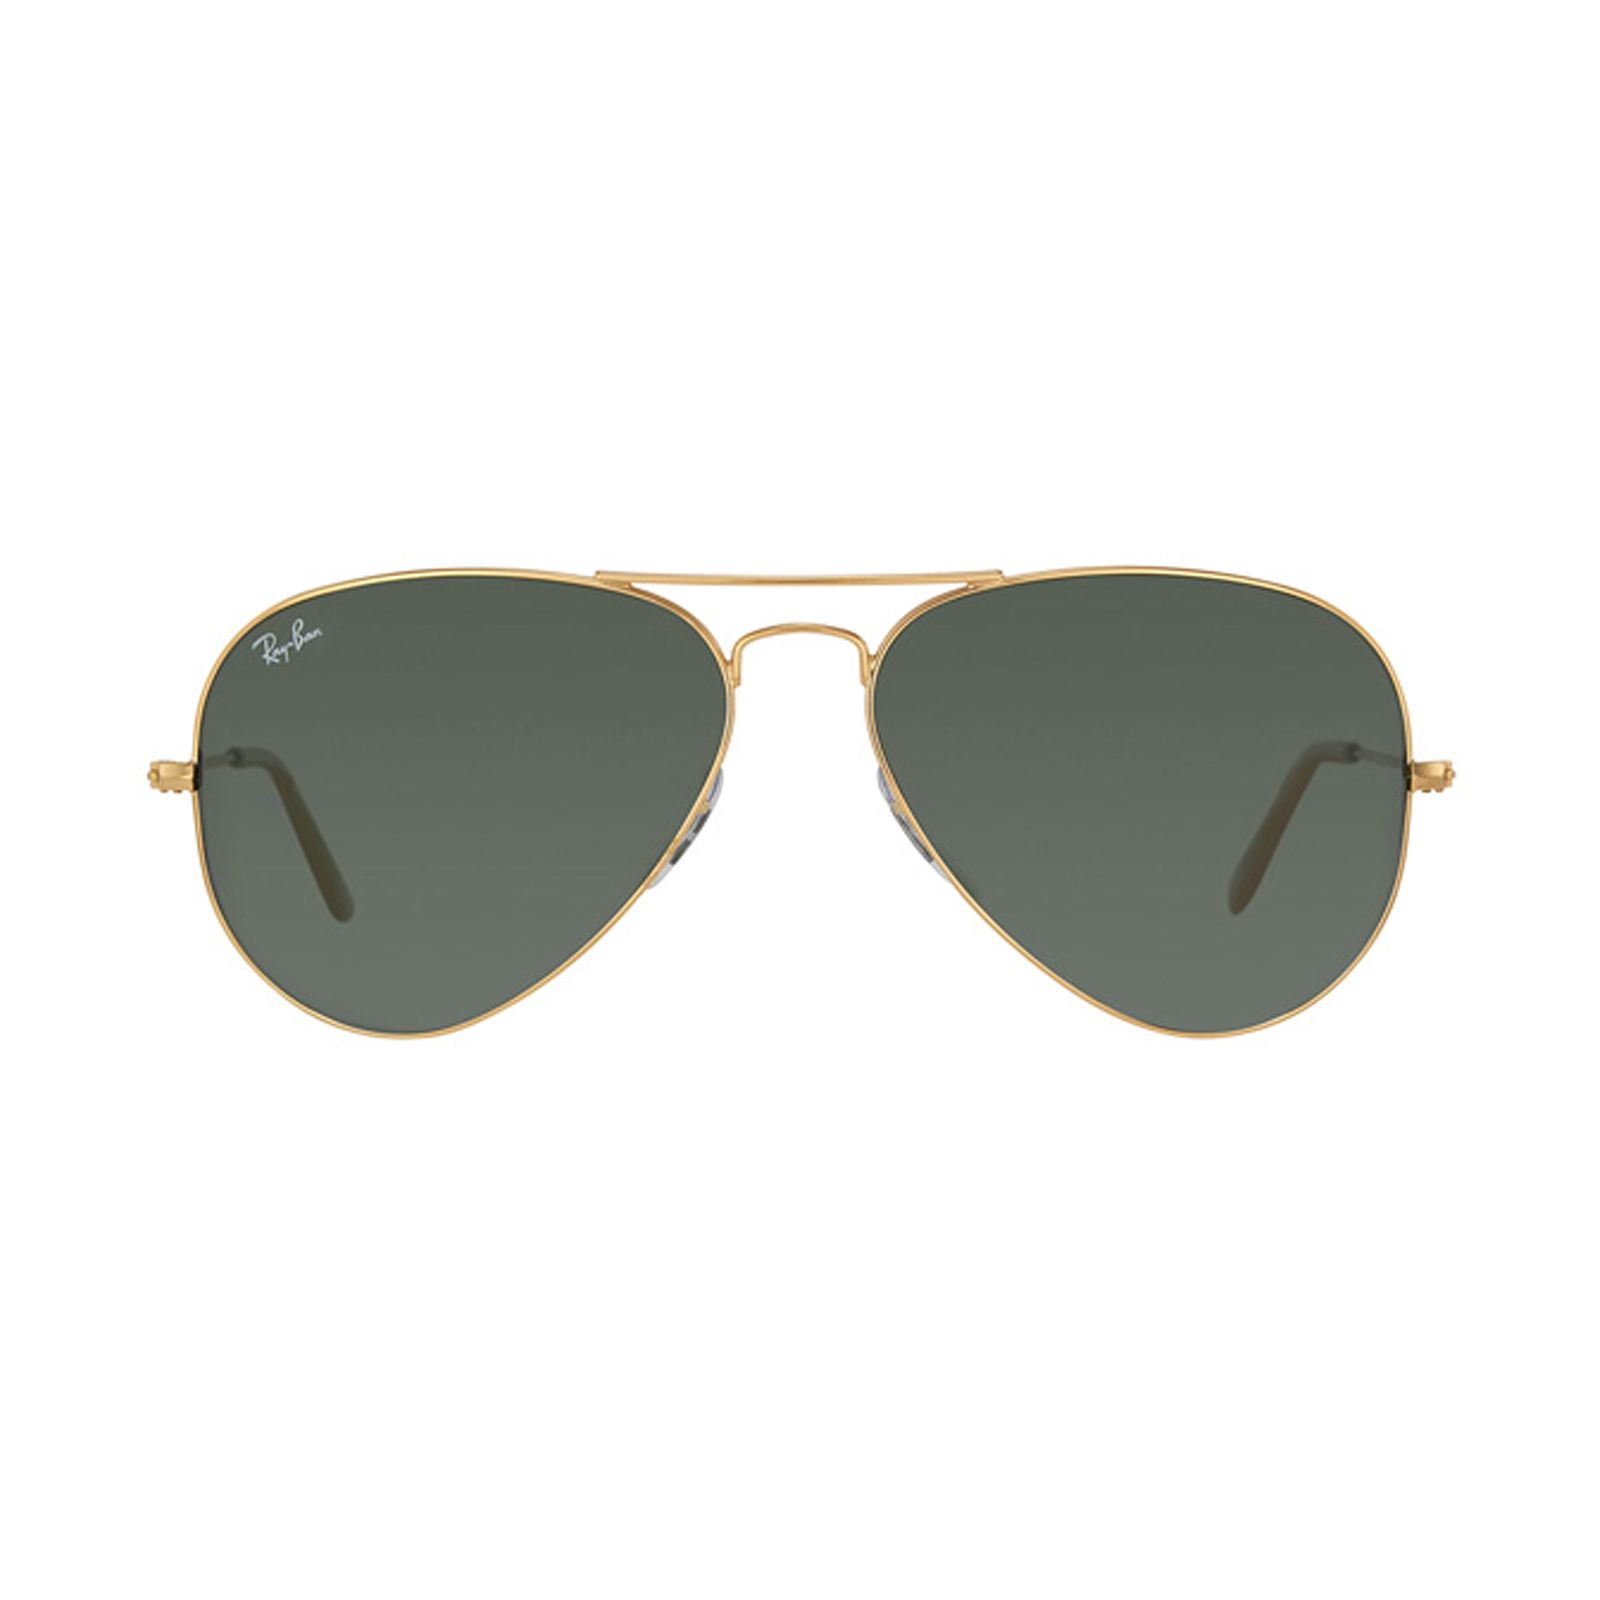 عینک آفتابی ری بن مدل 3025-001/58-58 - طلایی - 1